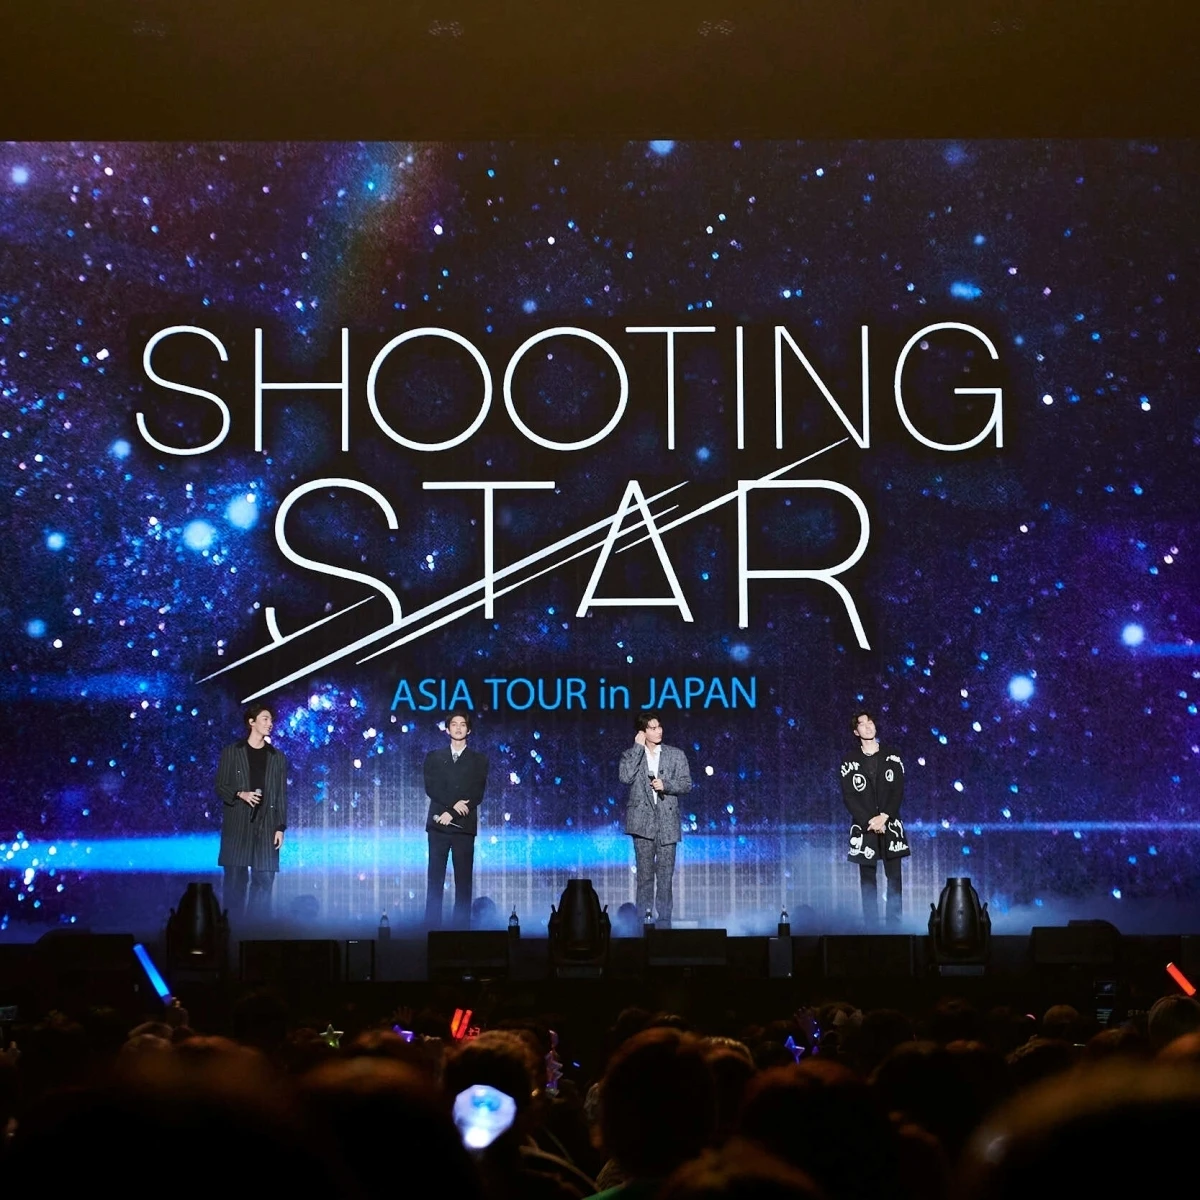 タイのスター・Bright、Win、Dew、Naniによる【Shooting Star Asia Tour in JAPAN】公演。歓喜のDAY1をマキアが全力レポート